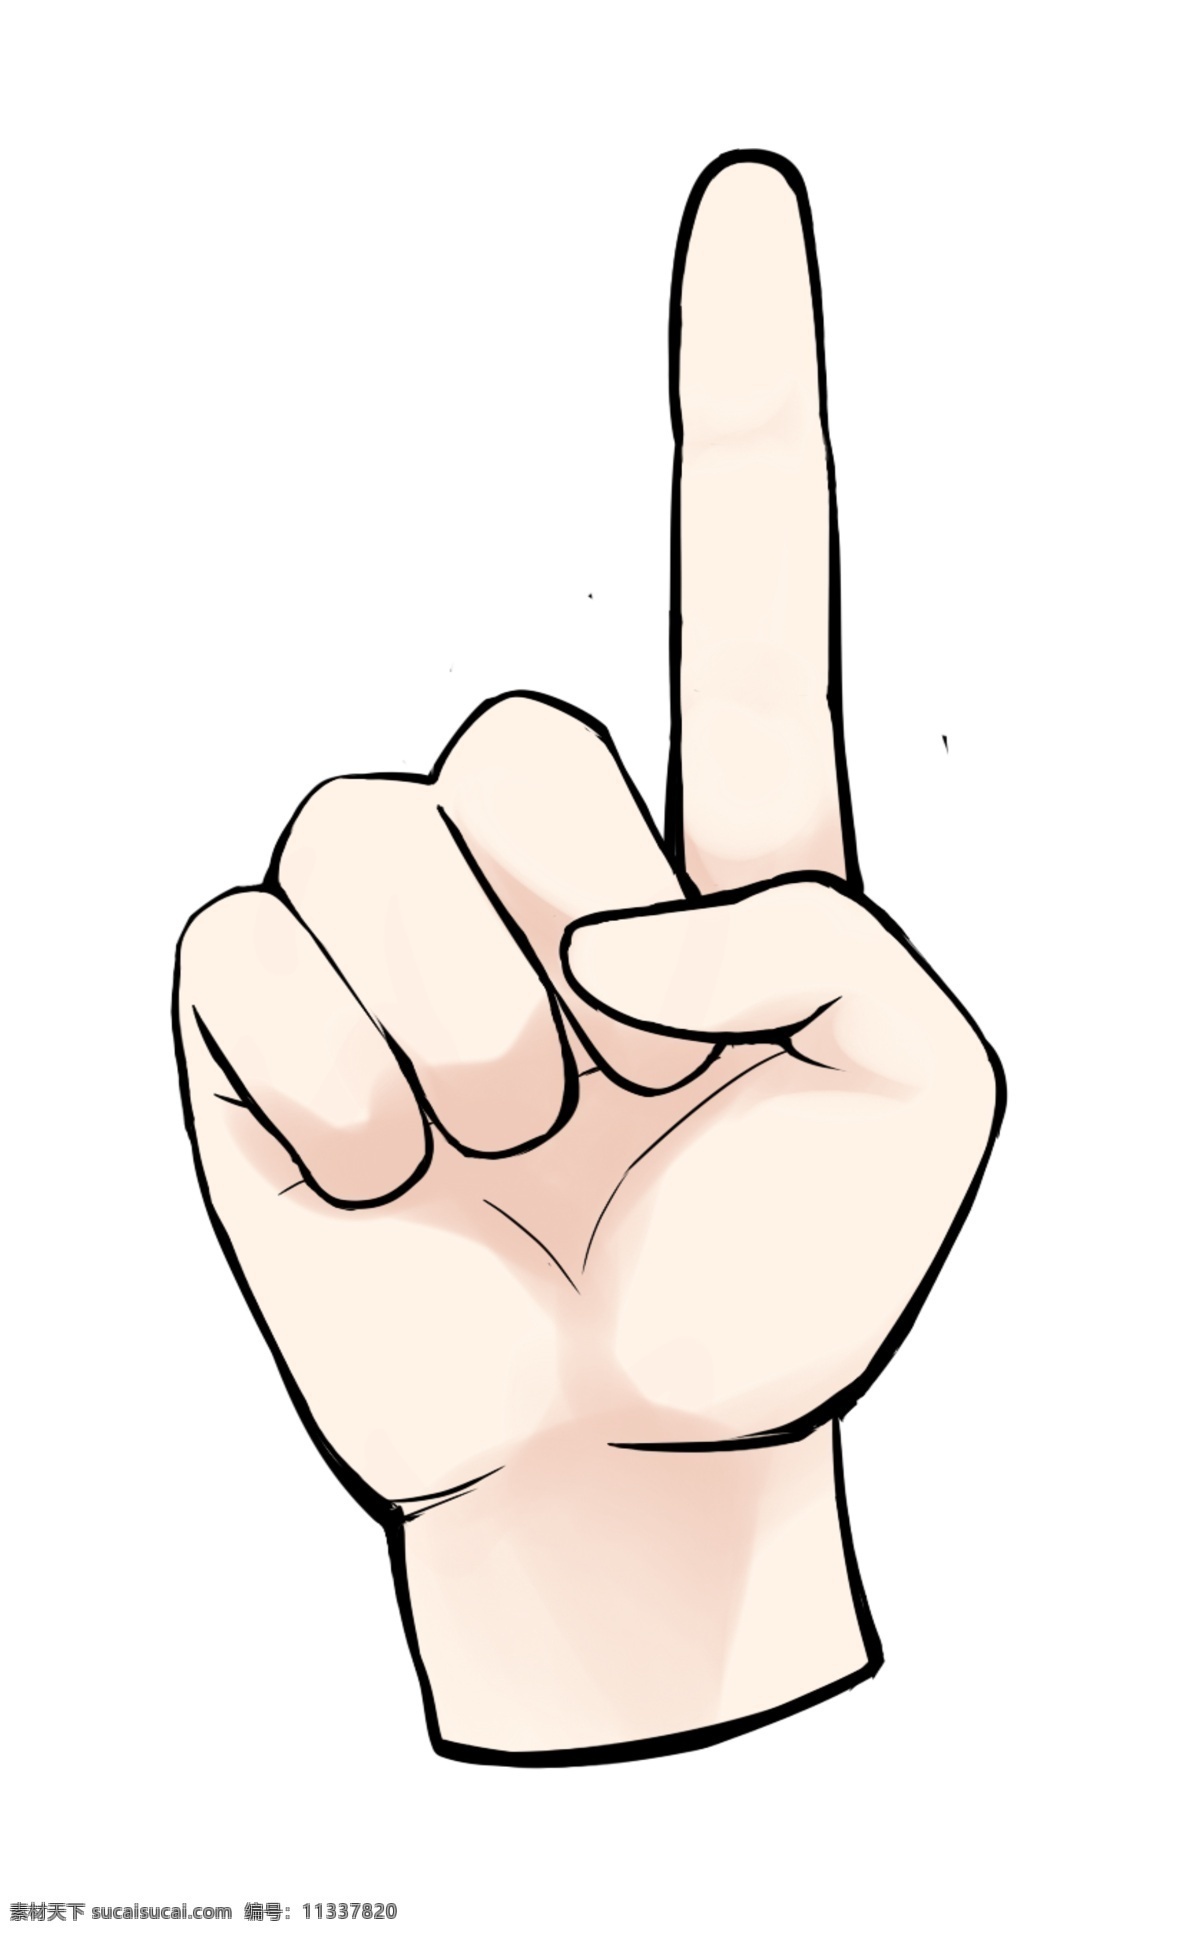 食指 手势 卡通 插画 食指的手势 卡通插画 手势插画 摆姿势 肢体语言 手语 哑语 指上的手势